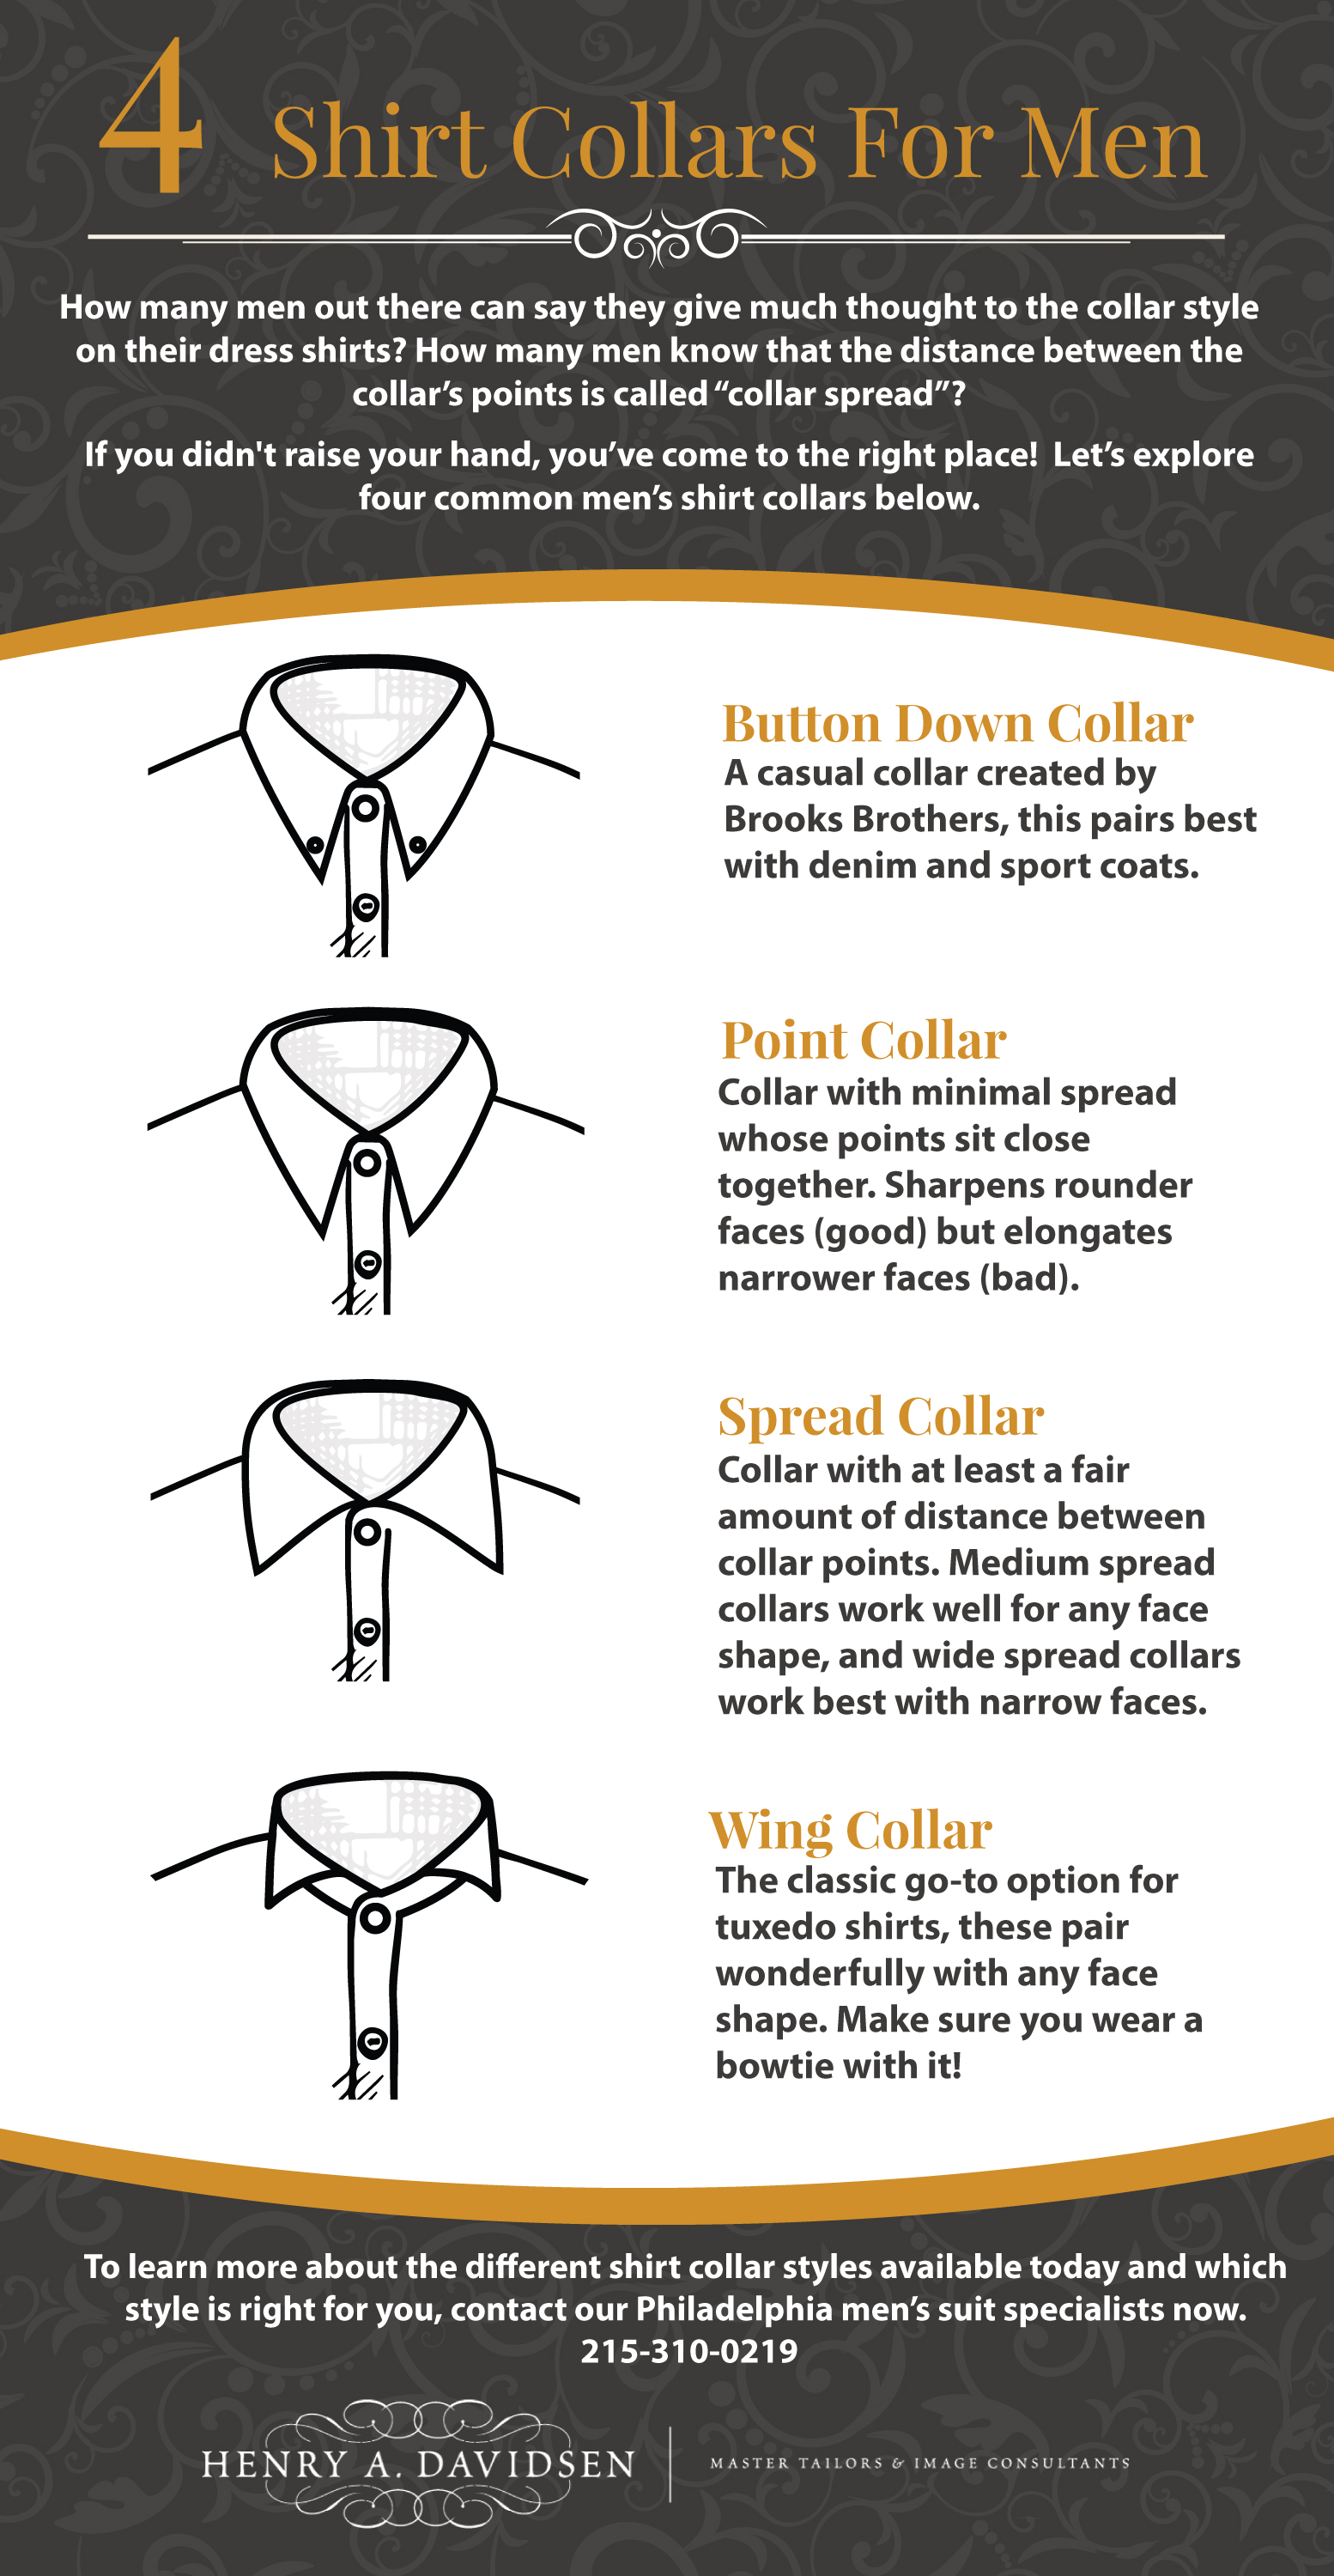 4 Shirt Collars For Men - Henry A Davidsen